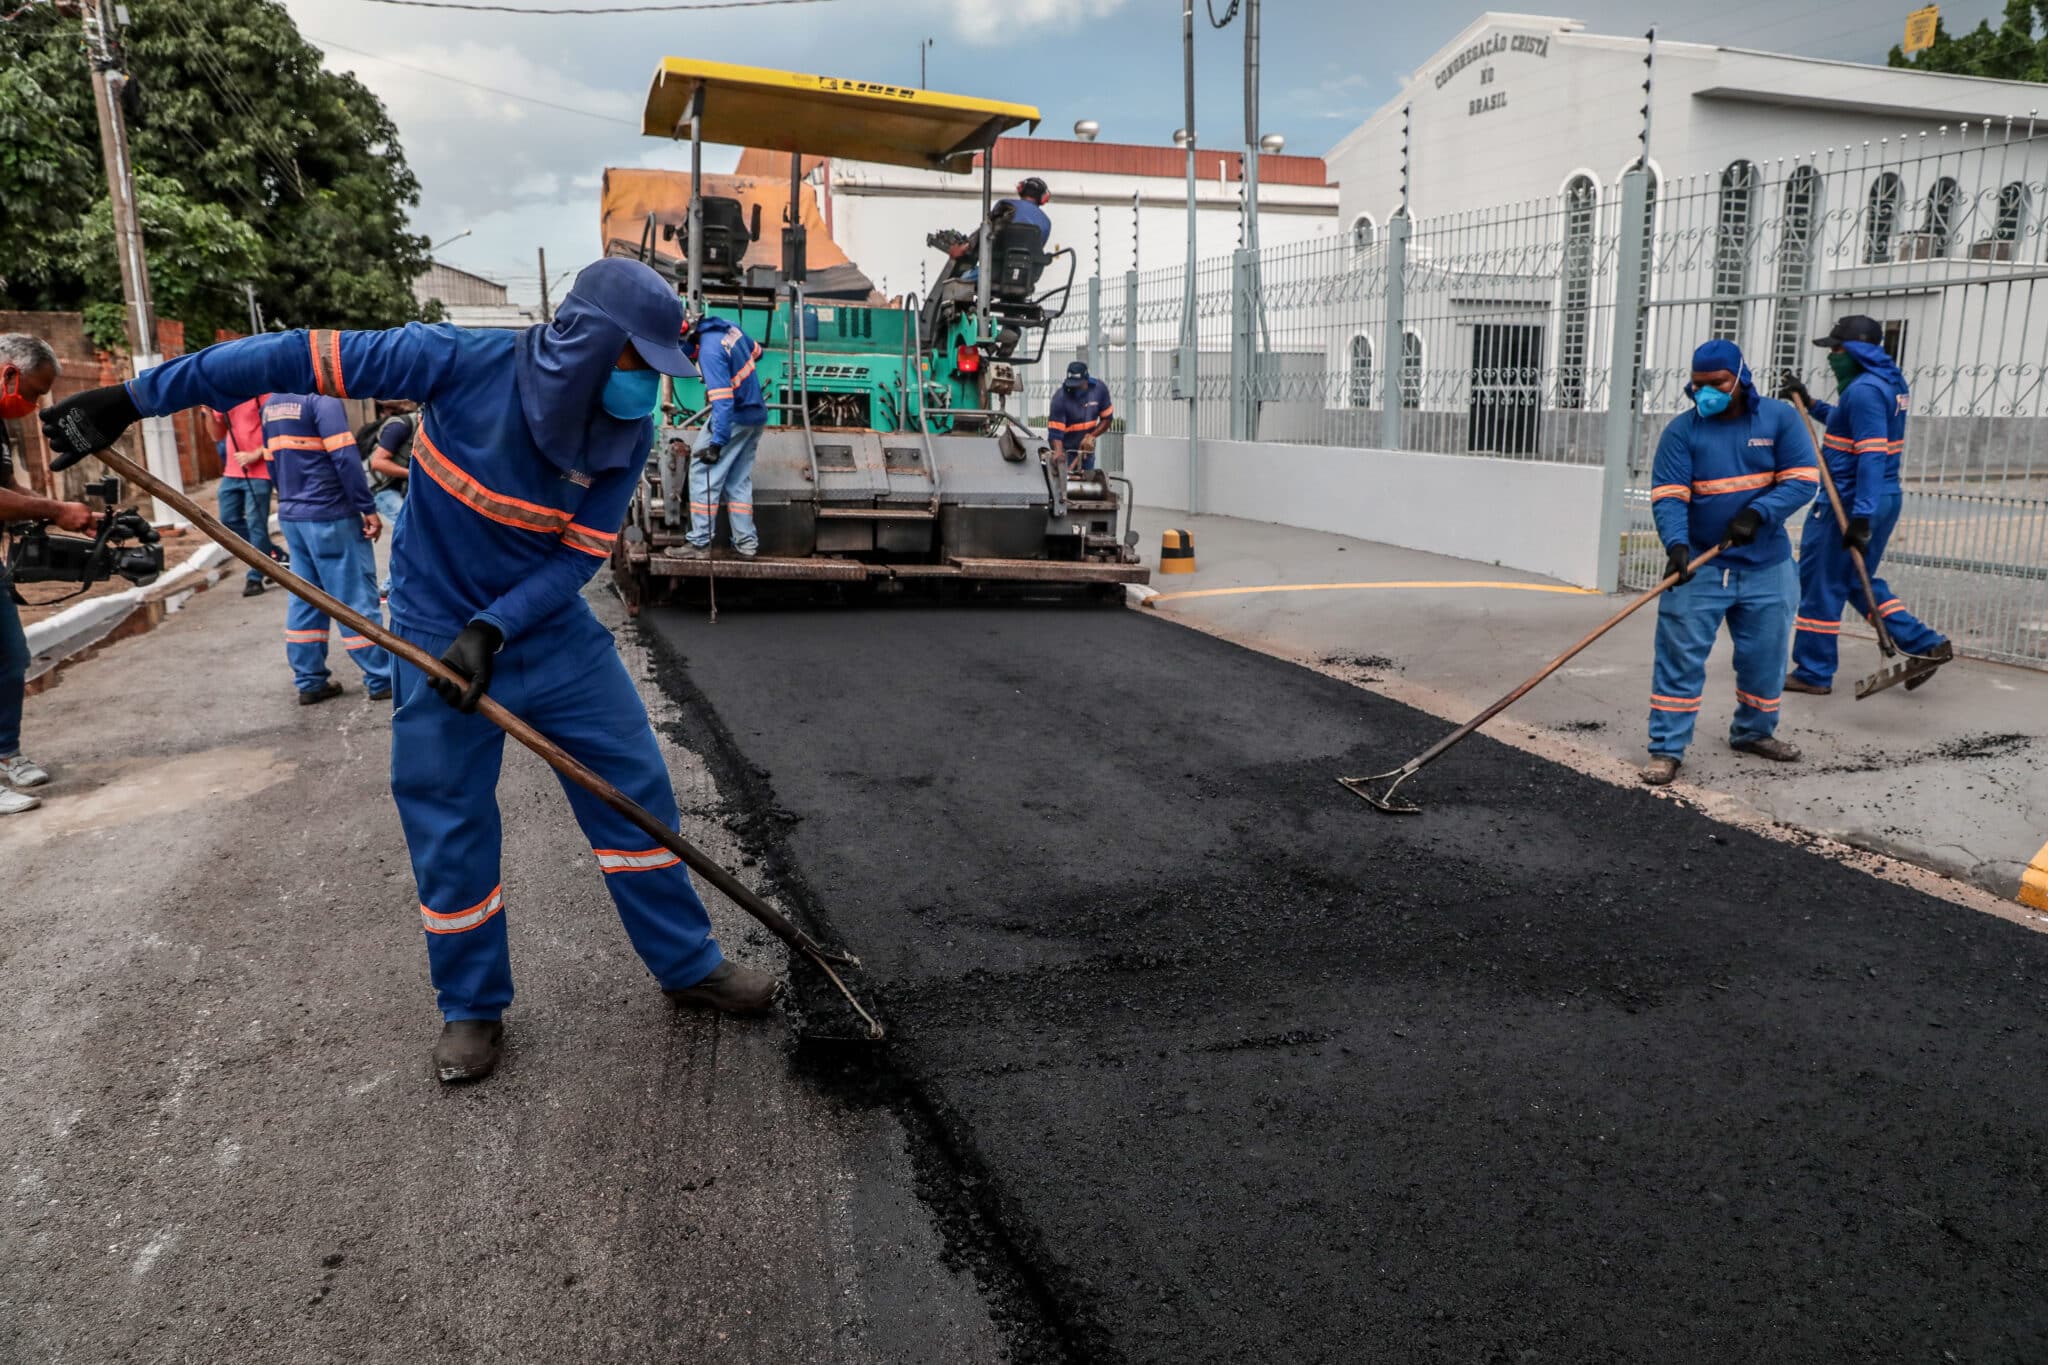 governo investe r 967 milhoes para melhorar asfalto moradias e distribuicao de agua em varzea grande interna 2 2023 12 09 522150995 scaled